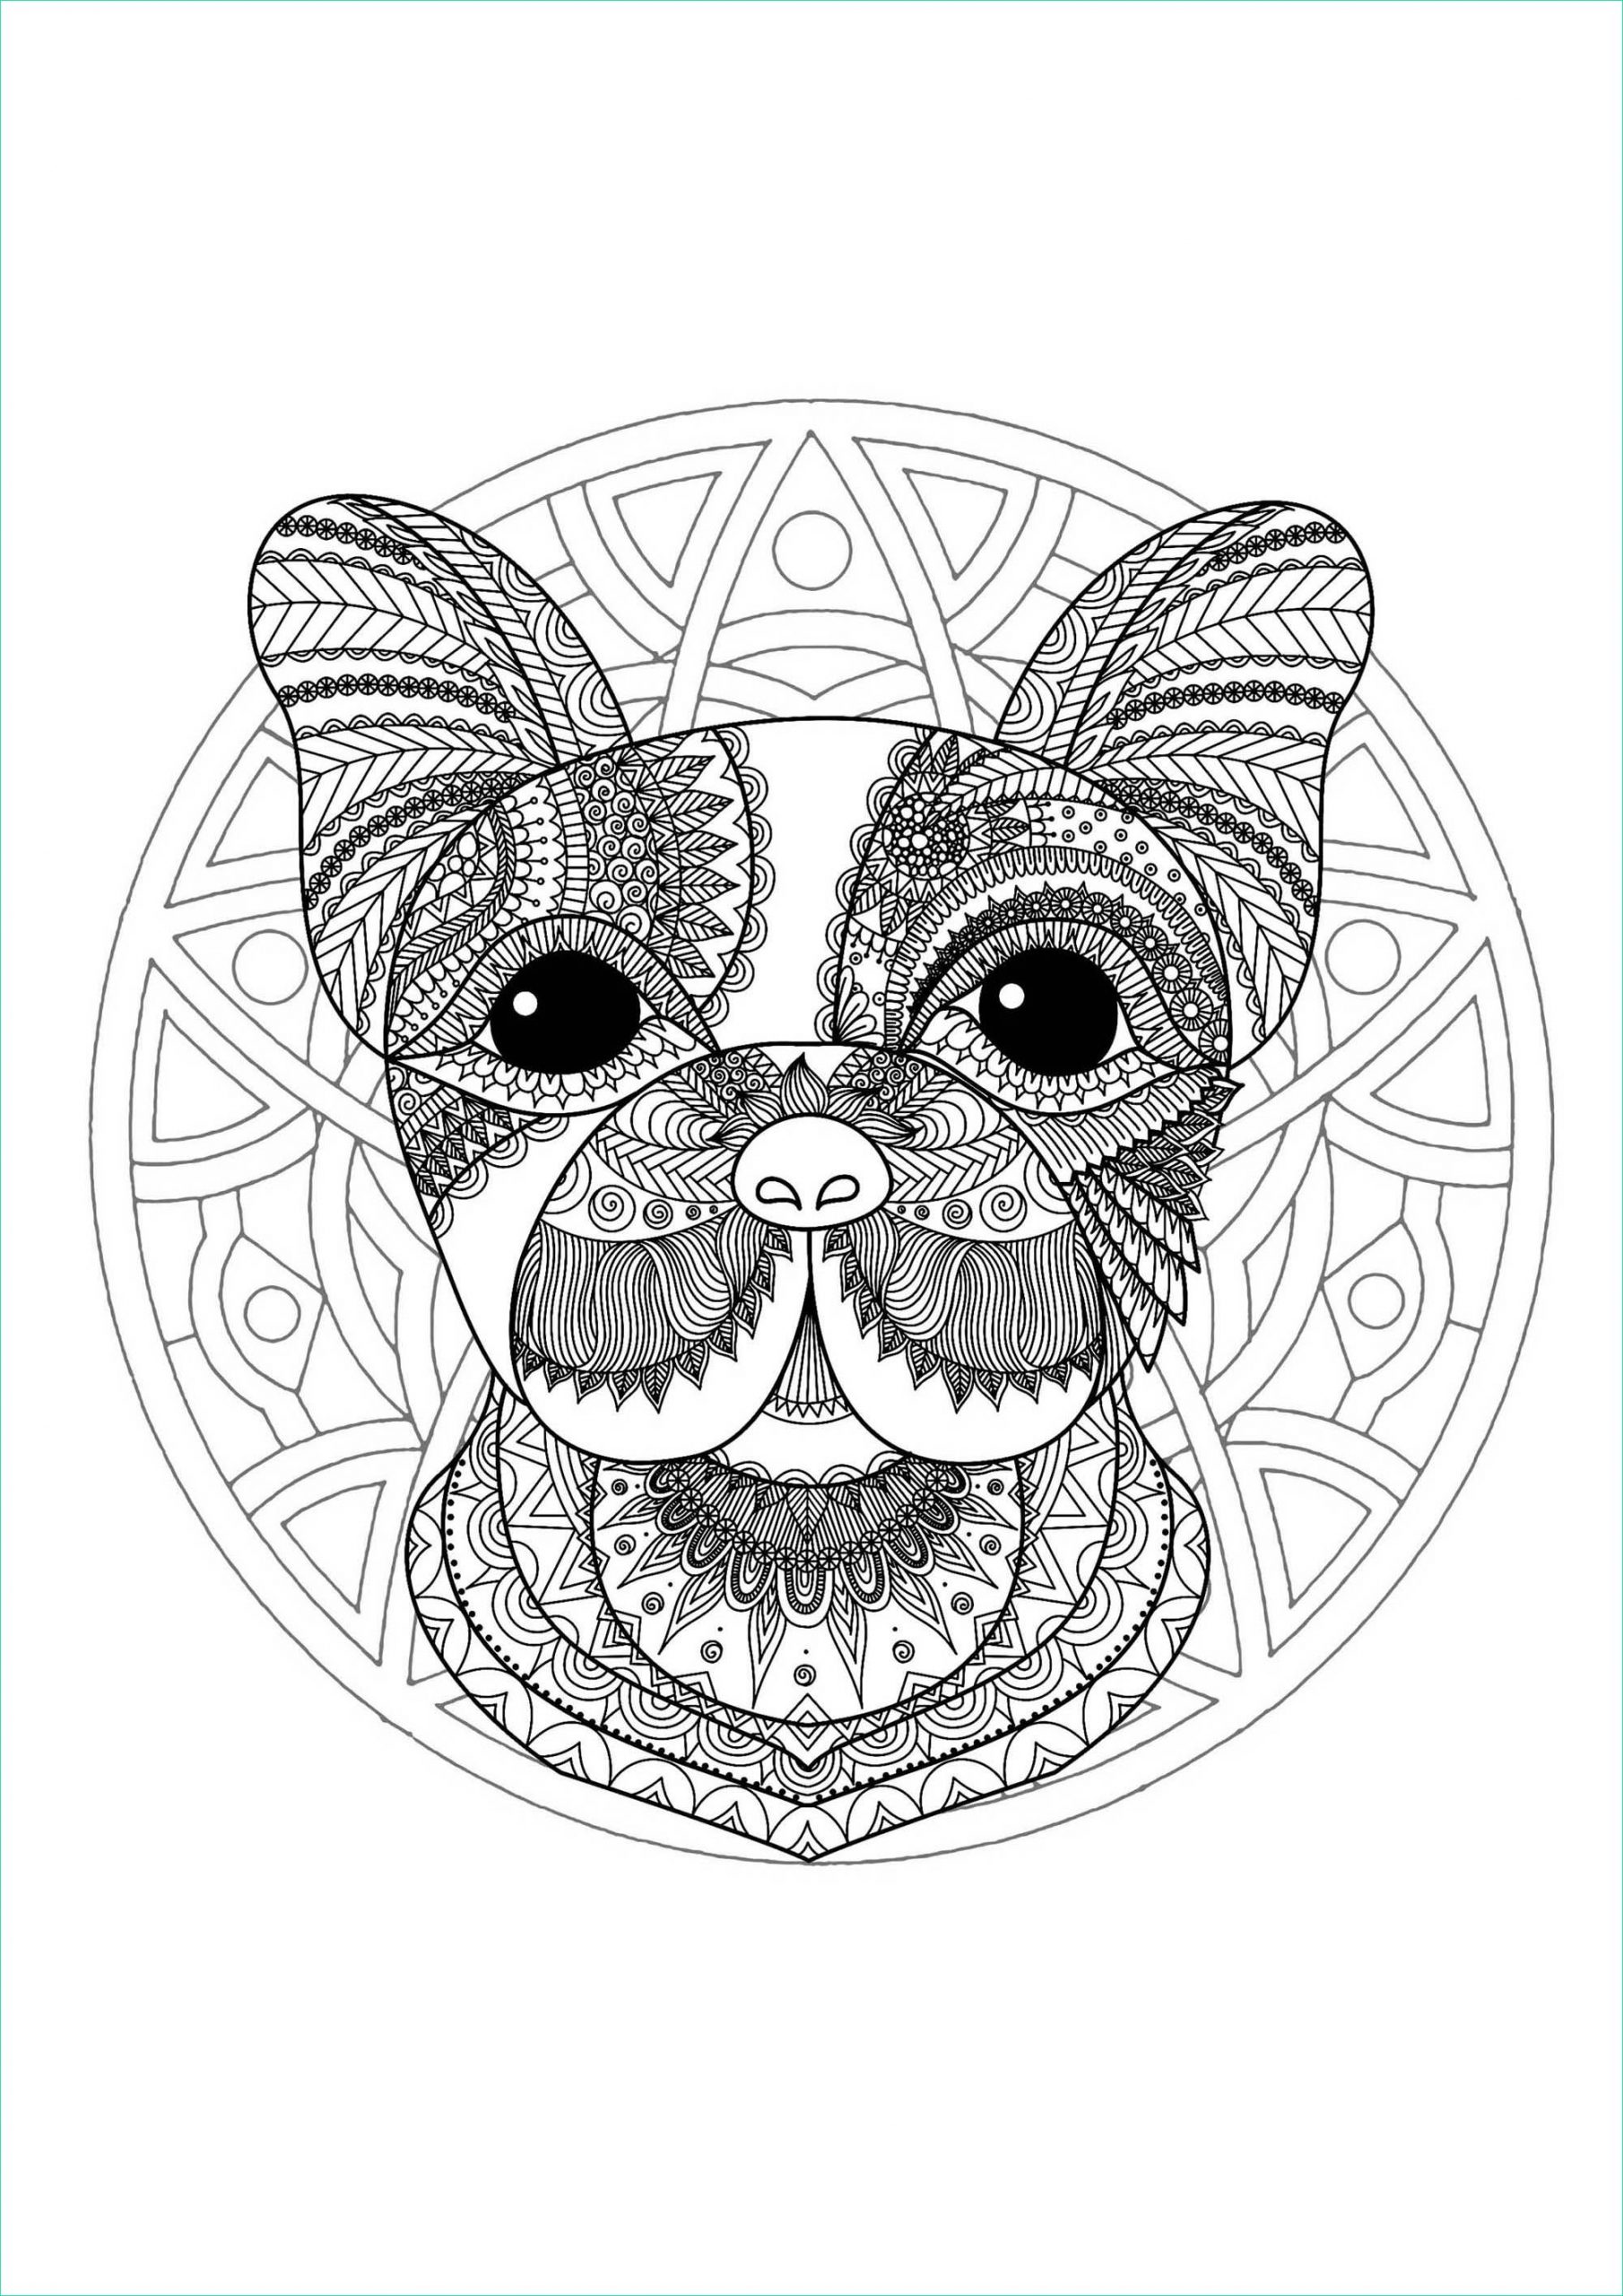 image=mandalas coloring mandala dog head 1 1